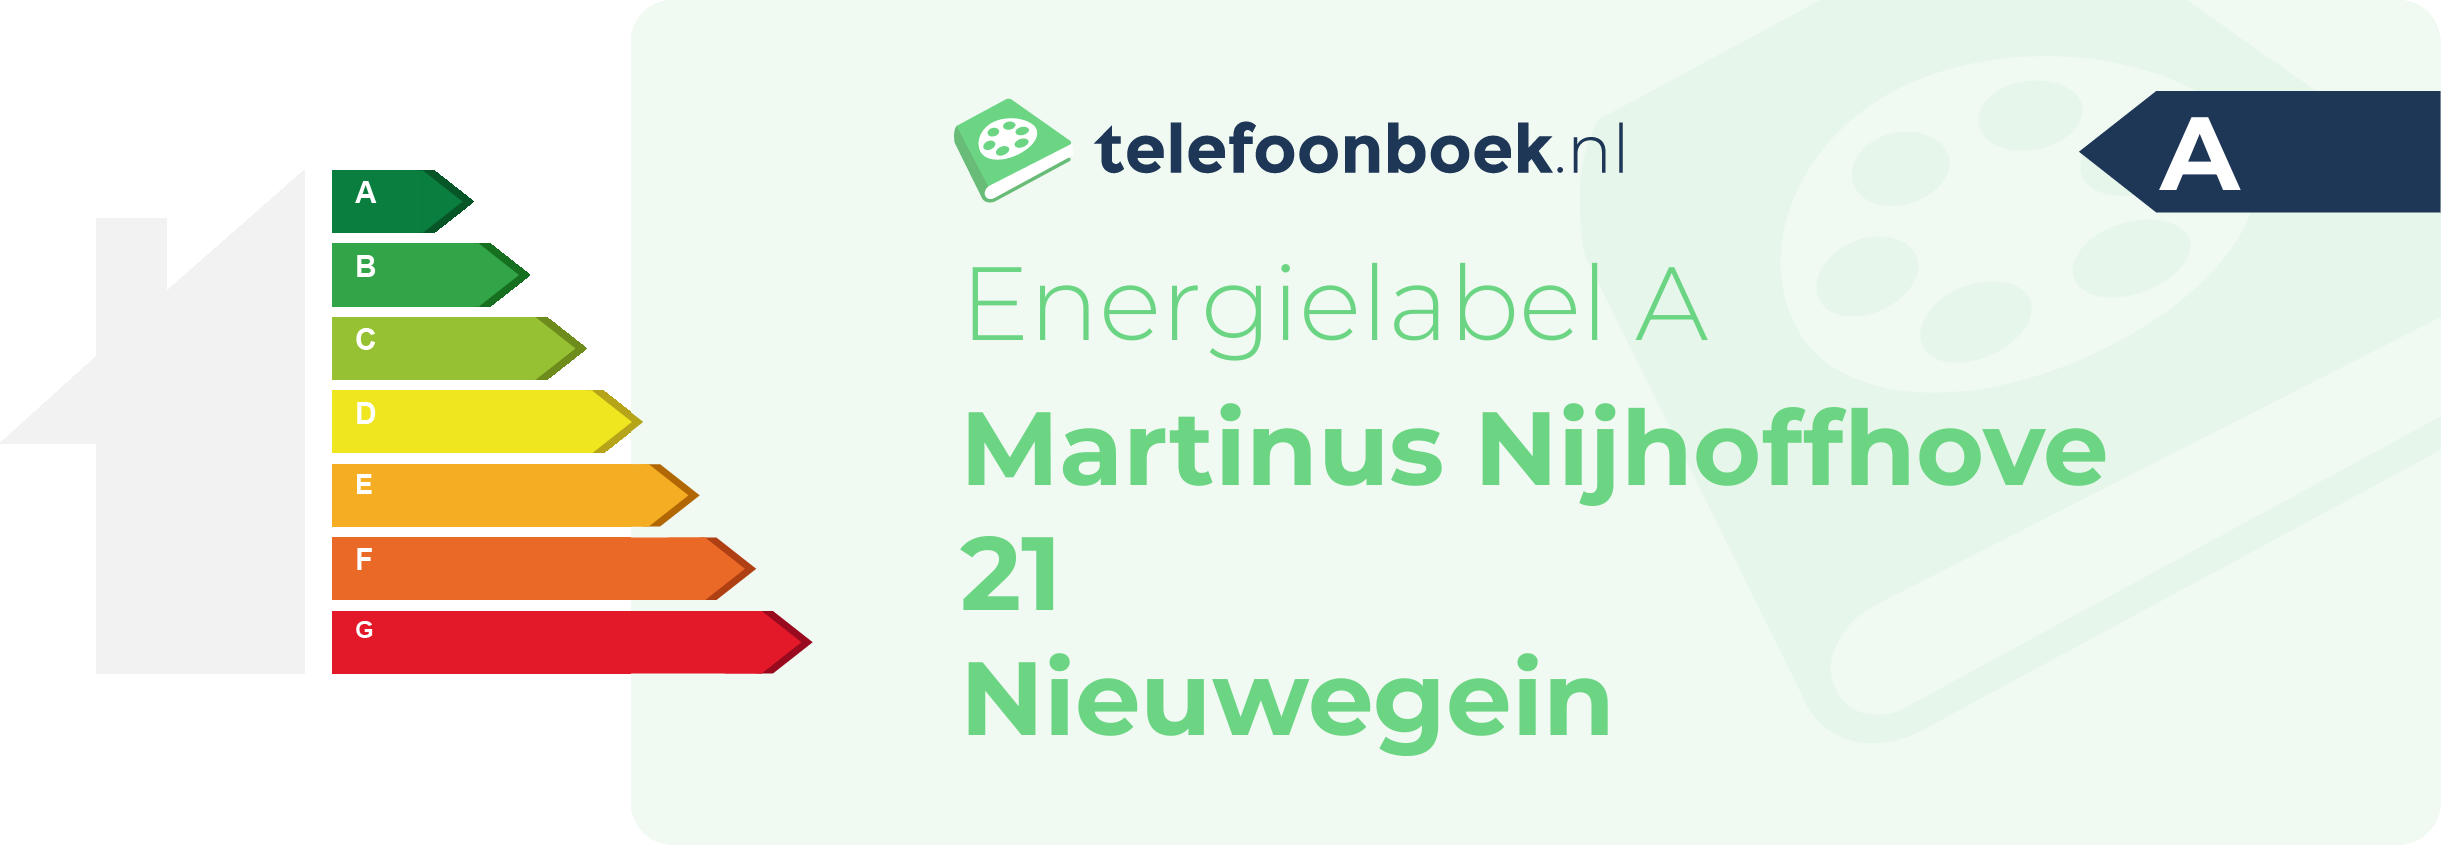 Energielabel Martinus Nijhoffhove 21 Nieuwegein